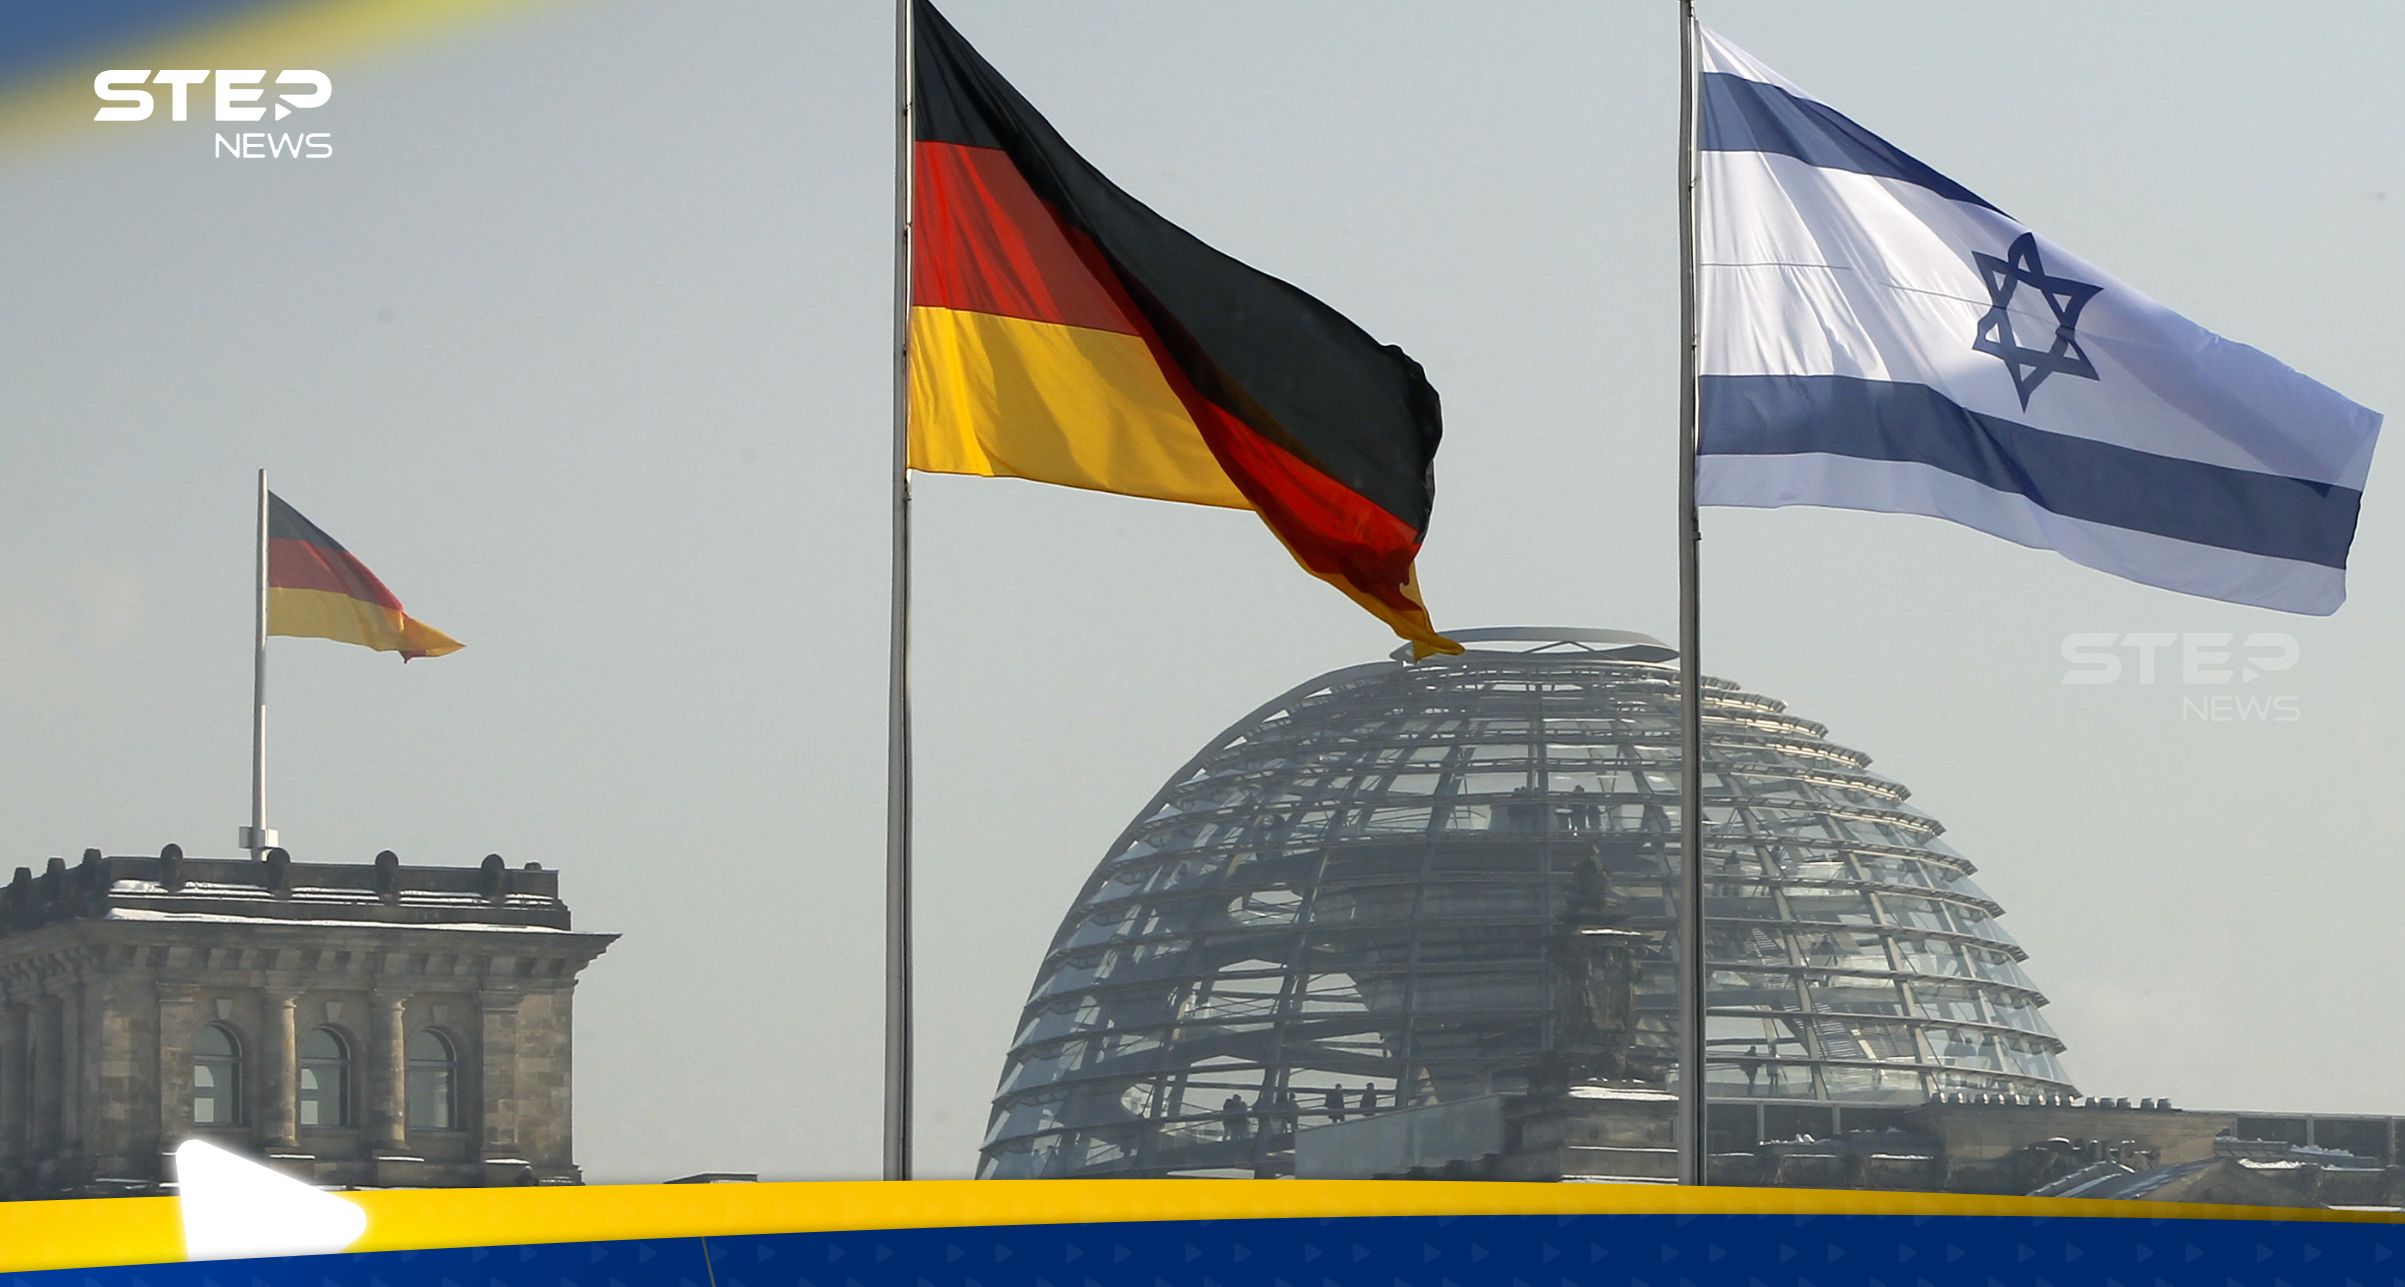 ناميبيا تنتقد ألمانيا بعد دعمها لإسرائيل